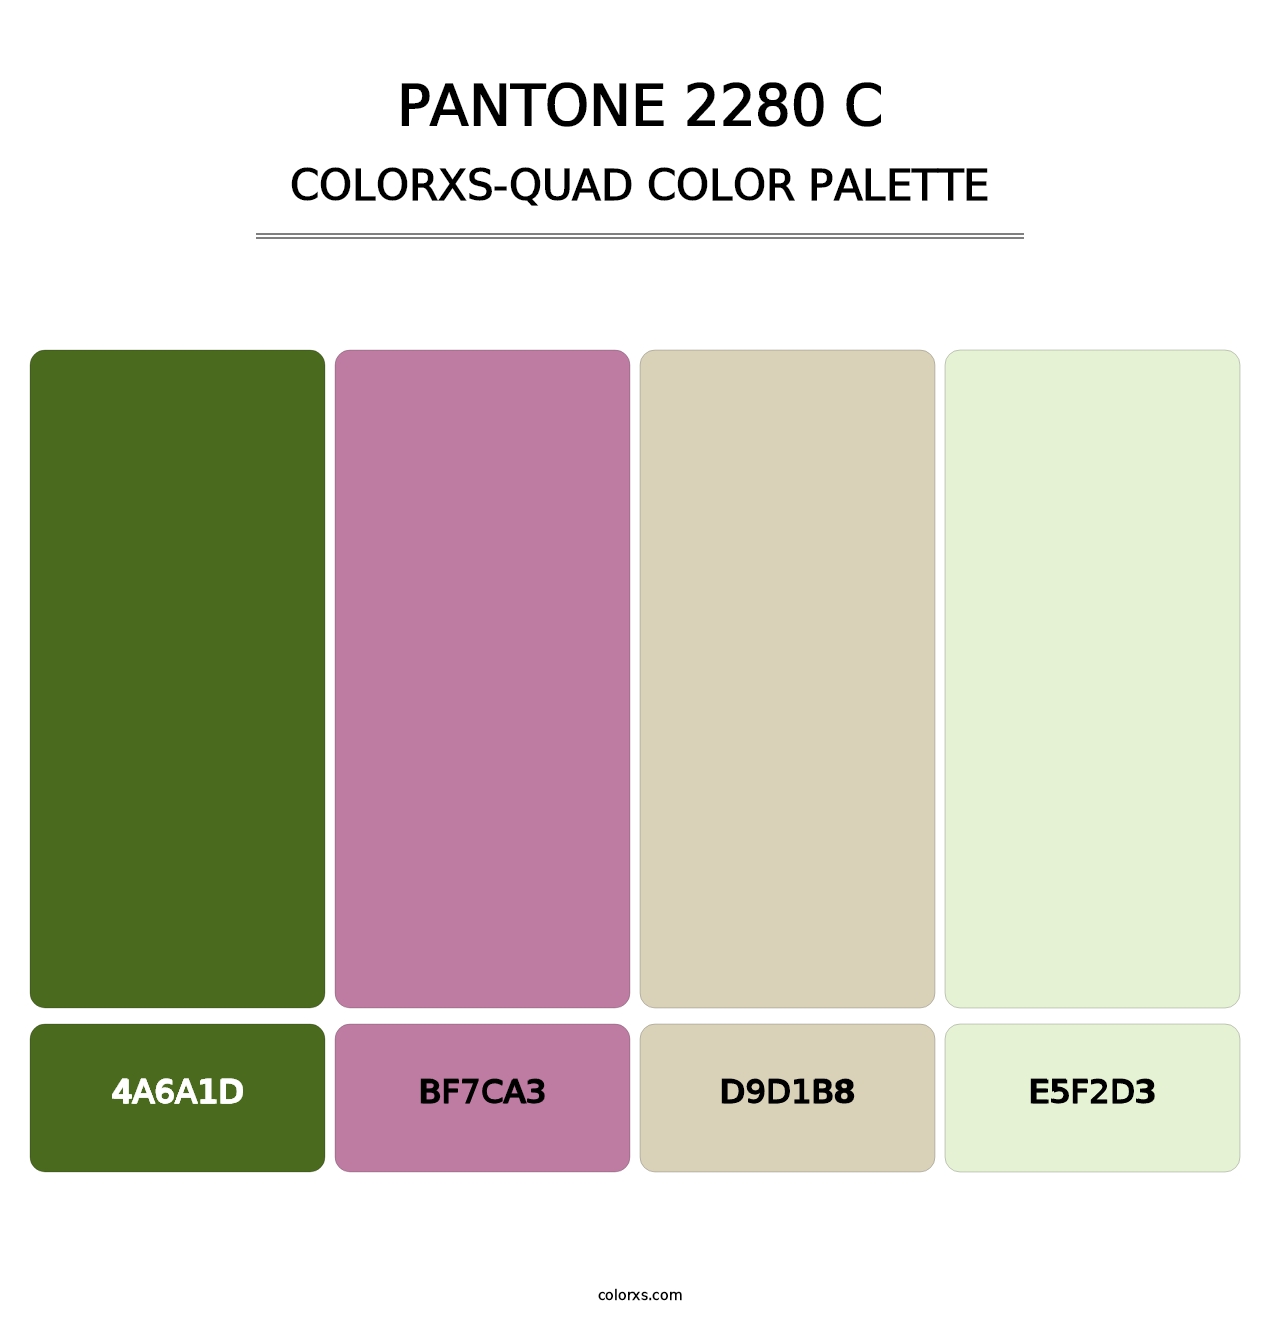 PANTONE 2280 C - Colorxs Quad Palette